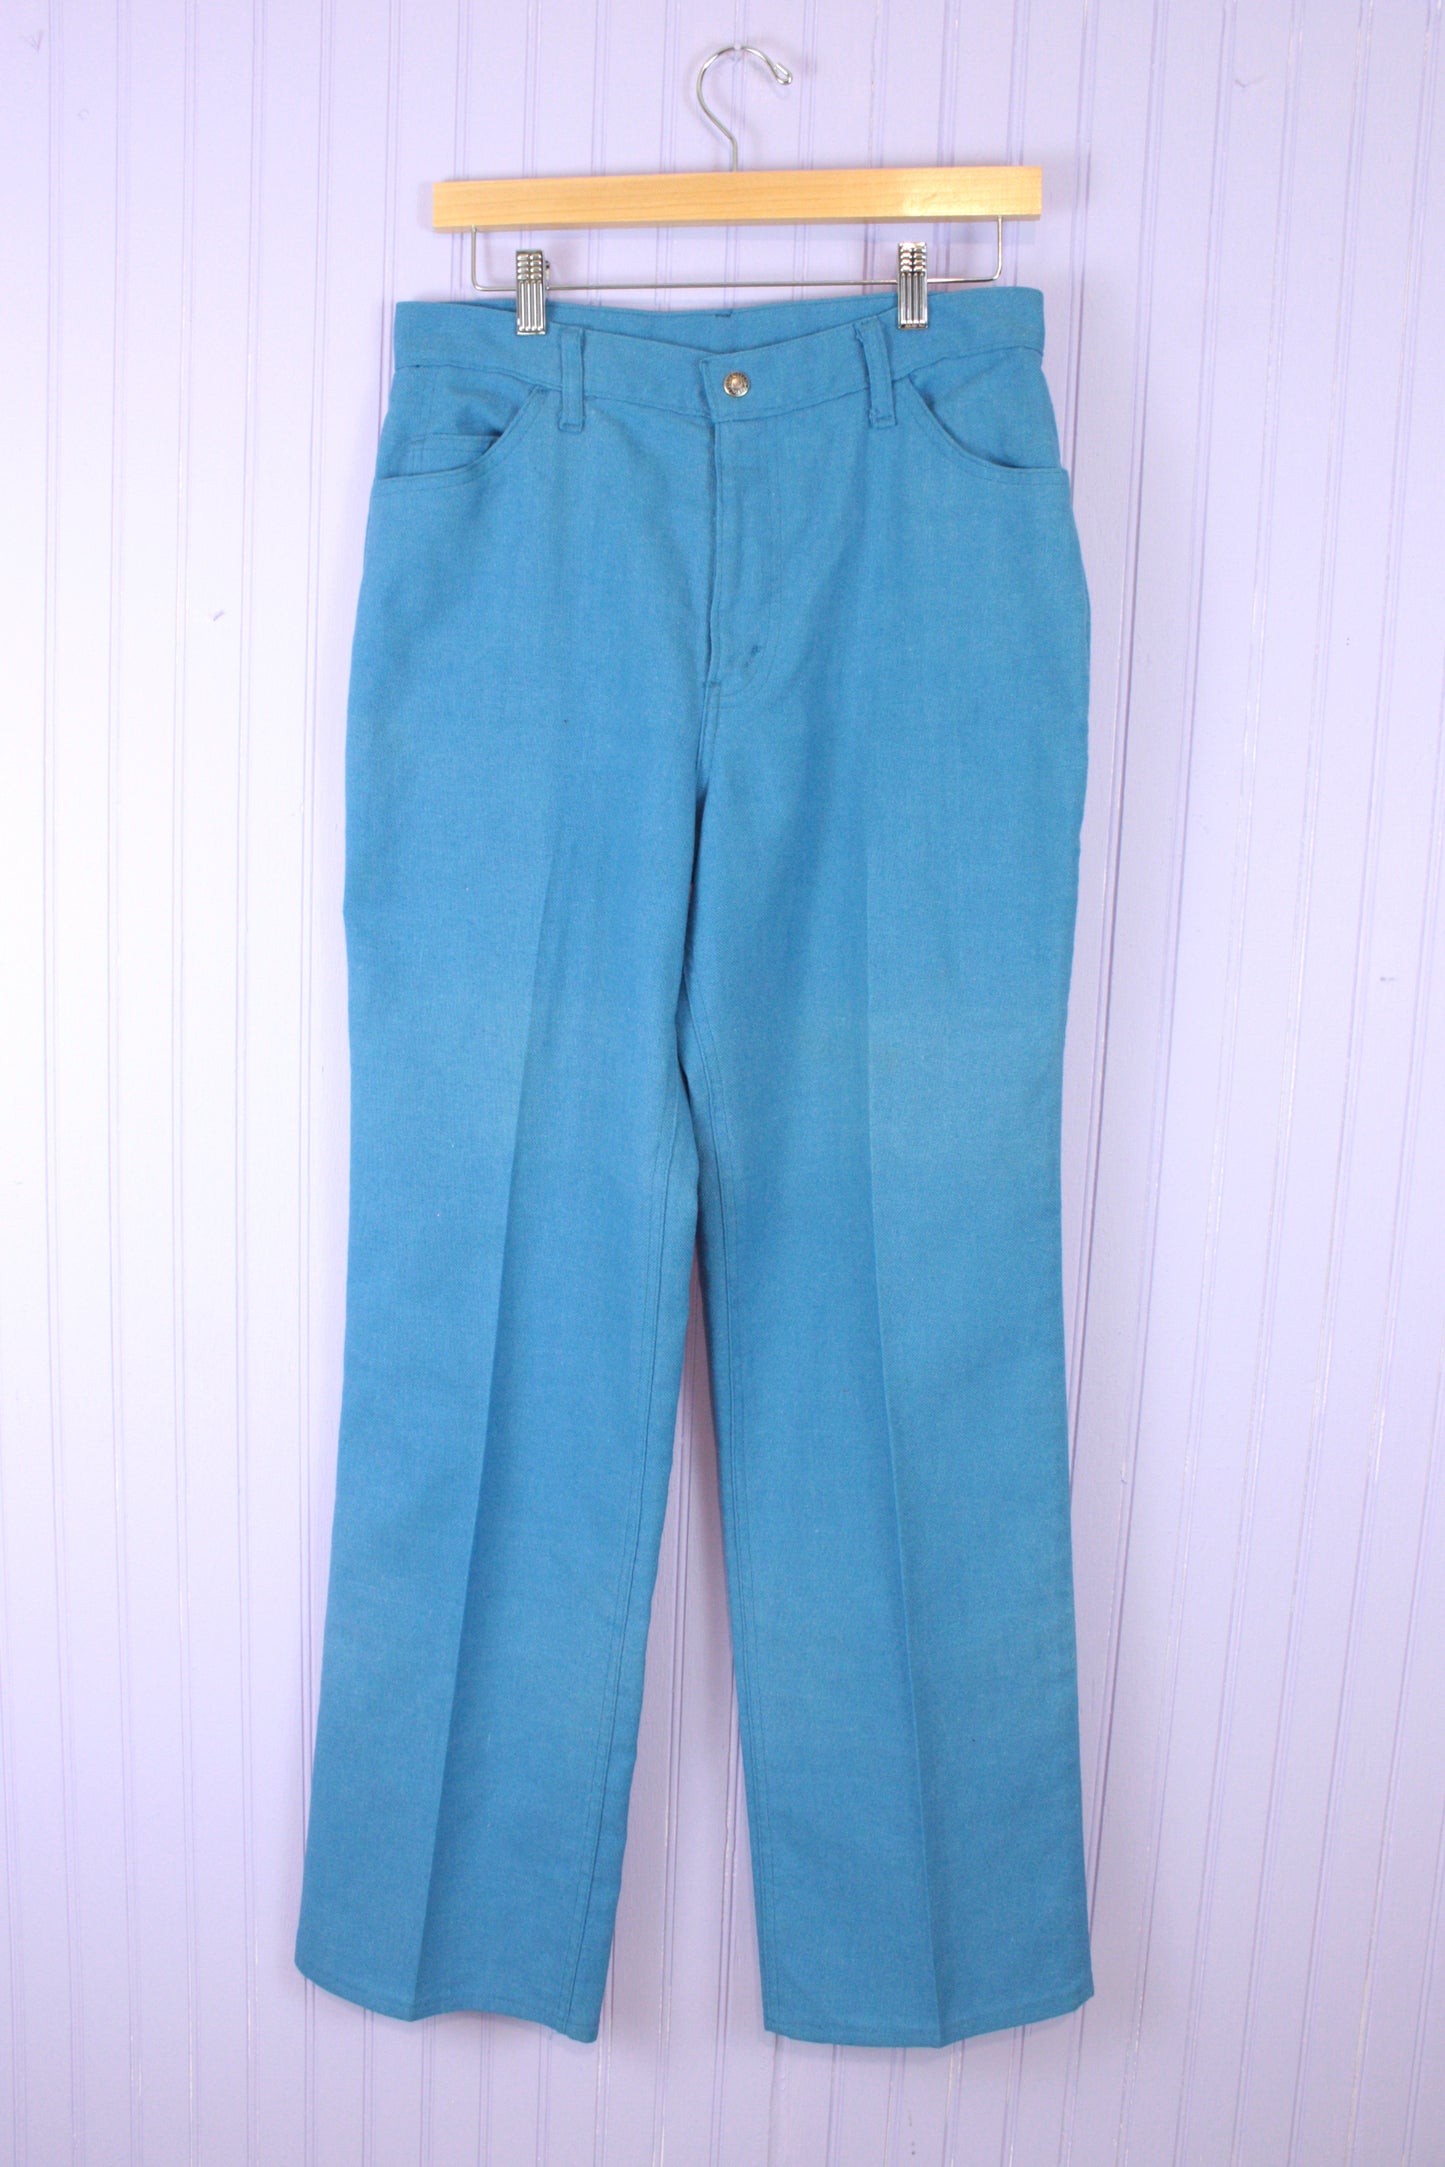 Vintage 1960's Levi's Jeans Rich Blue Trouser 31" x 30"